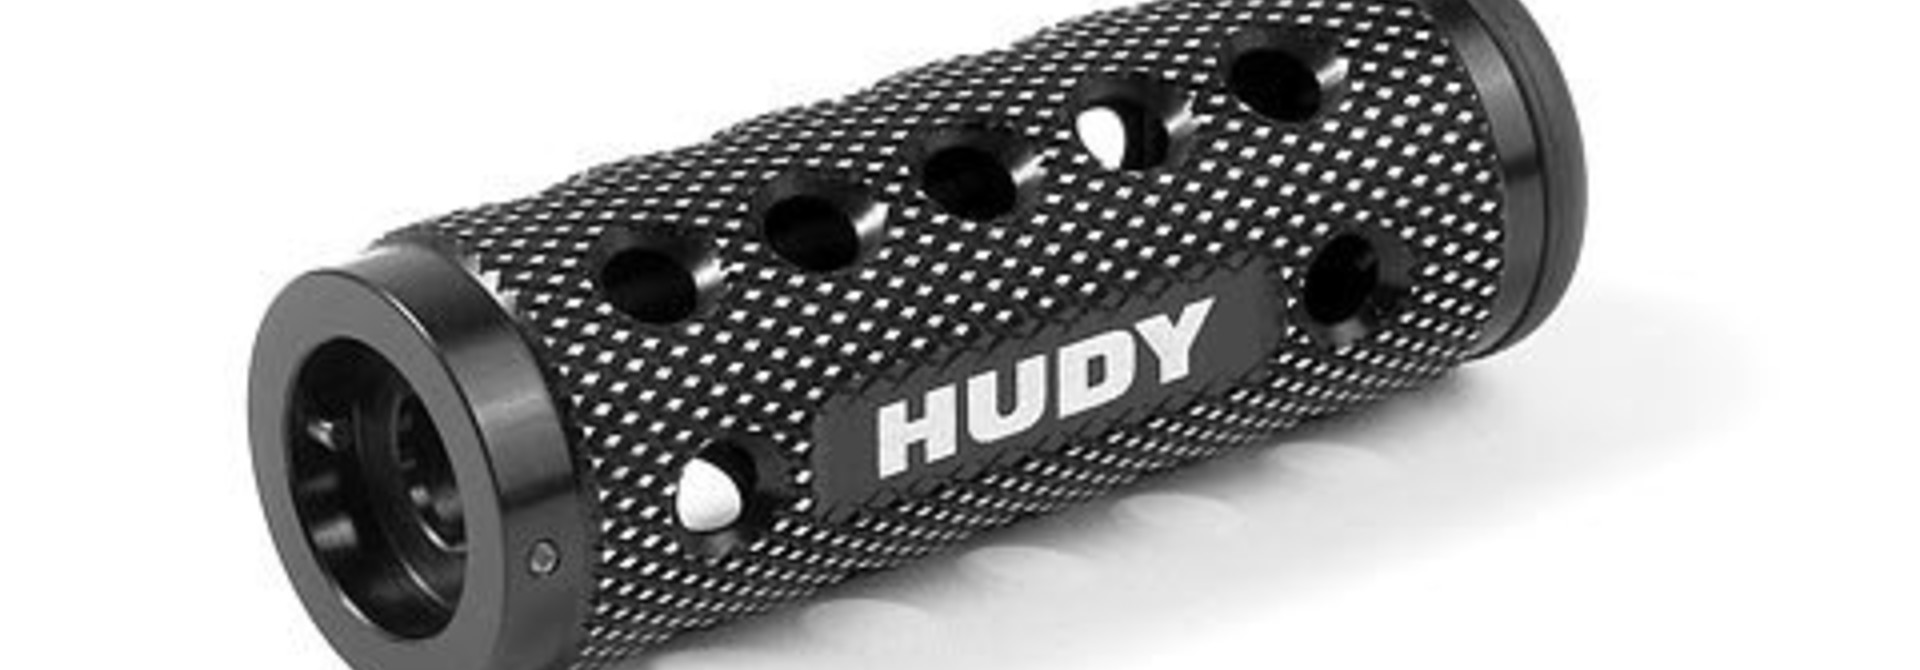 Hudy Clutch Spring Tool. H182005